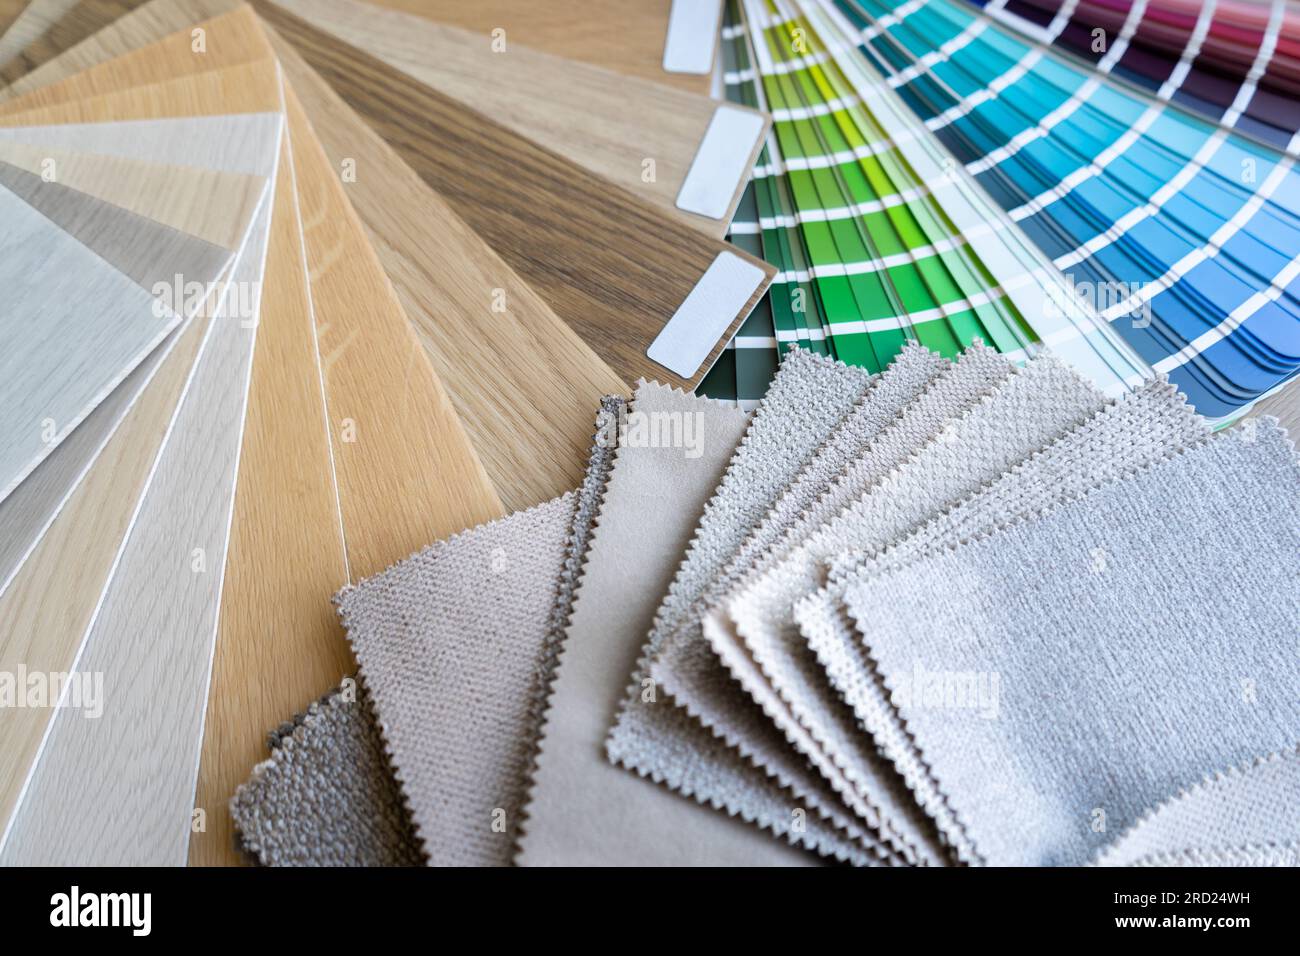 Catalogo di guide per combinazioni di colori con campioni di colori, pavimenti in legno e campioni di materiali per mobili. Composizione architettonica o di progettazione di interni. Foto Stock